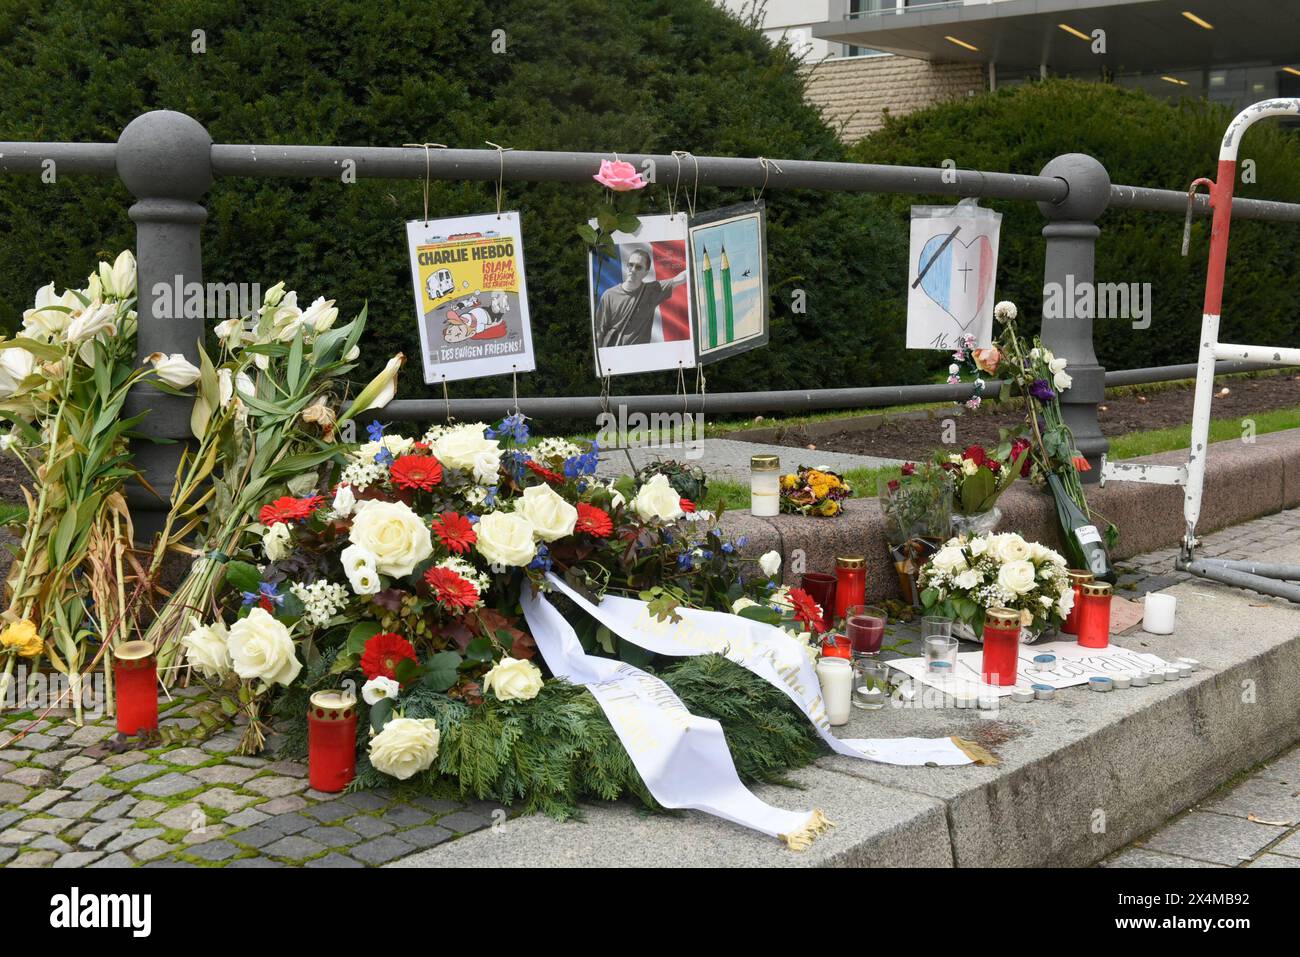 Wegen einer tödlichen Messerattake a Nizza werden Blumen vor der französischen Botschaft am Pariser Platz abgelegt. Dazu hängen einzelne kleine Plakate, wie eins über Charlie Hebdo. A Nizza hatte AM 29. Oktober gegen 9,00 Uhr ein islamistischer Attentäter in der Kirche Notre-Dame eine Messerattacke verübt. Dabei tötet er zwei Frauen, dazu einen Mann, der in eine nahe gelegene Bar flüchtet und dort stirbt. Der Täter rief Allahu akbar Gott ist Groß. Mehrere Menschen werden bei dem Angriff verletzt, bis der mutmaßliche Täter festgenommen werden kann. Dazu wurde 16. Oktober a Conflans-Sainte Foto Stock